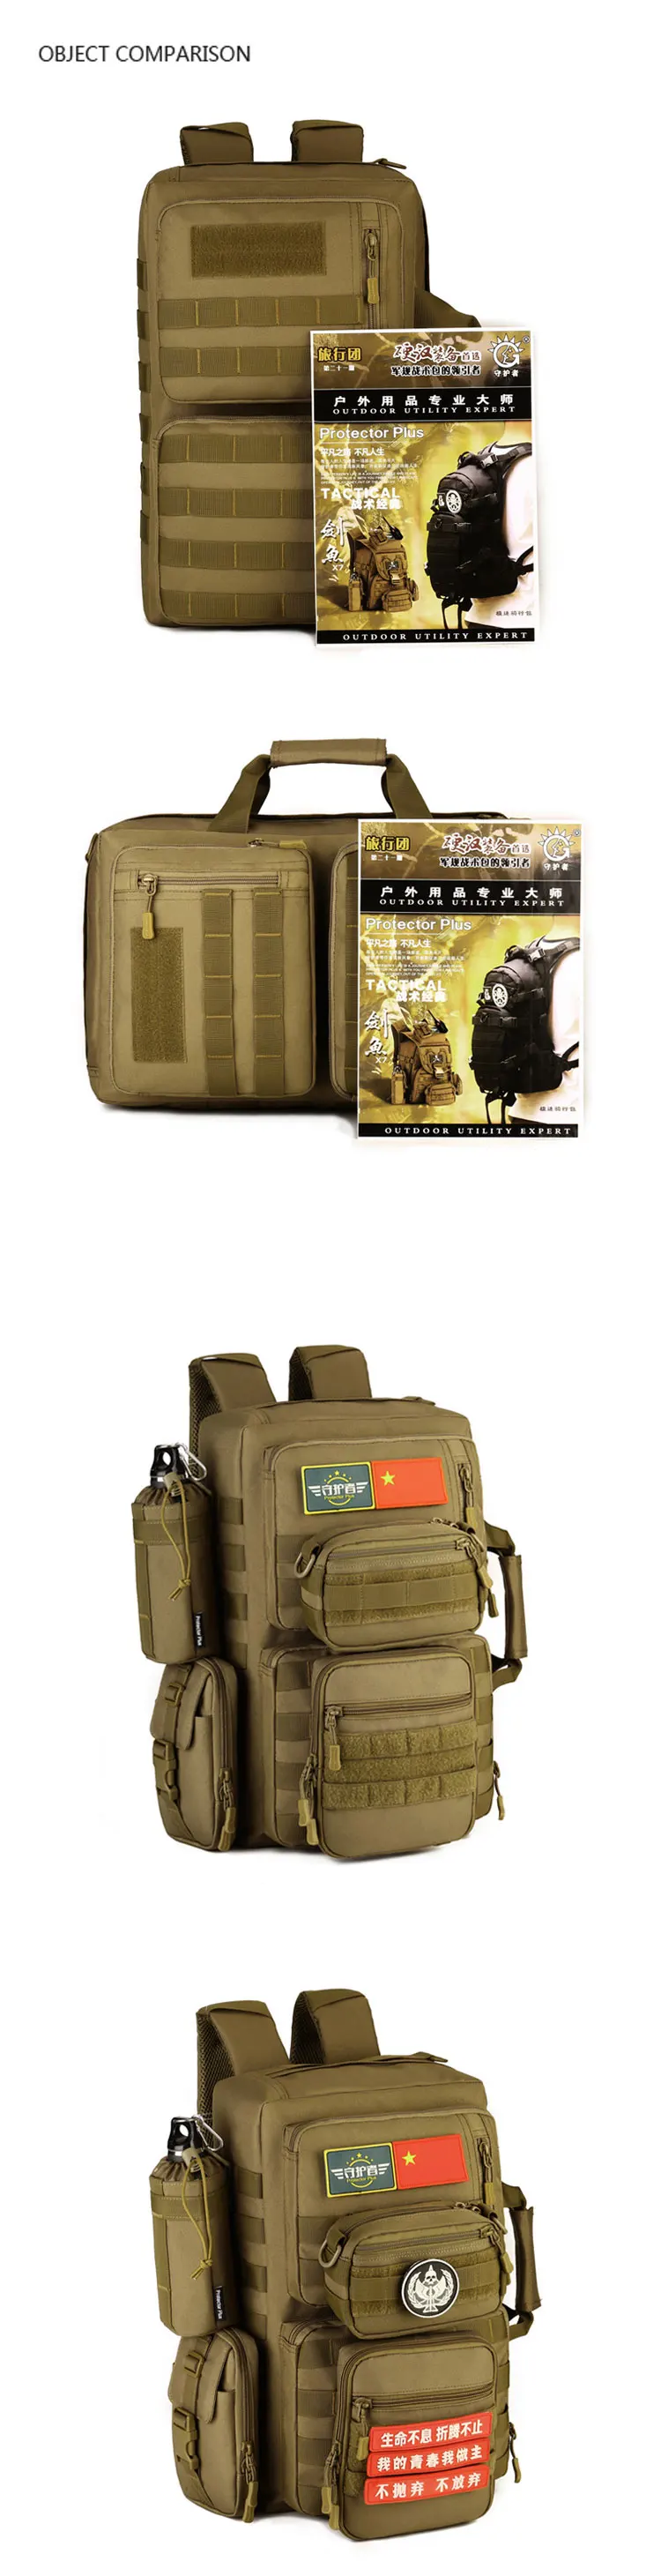 Камуфляжный Военный Тактический Рюкзак Molle, штурмовая сумка, армейский рюкзак для альпинизма, для ноутбука, для спорта на открытом воздухе, путешествий, кемпинга, походов, трекинга